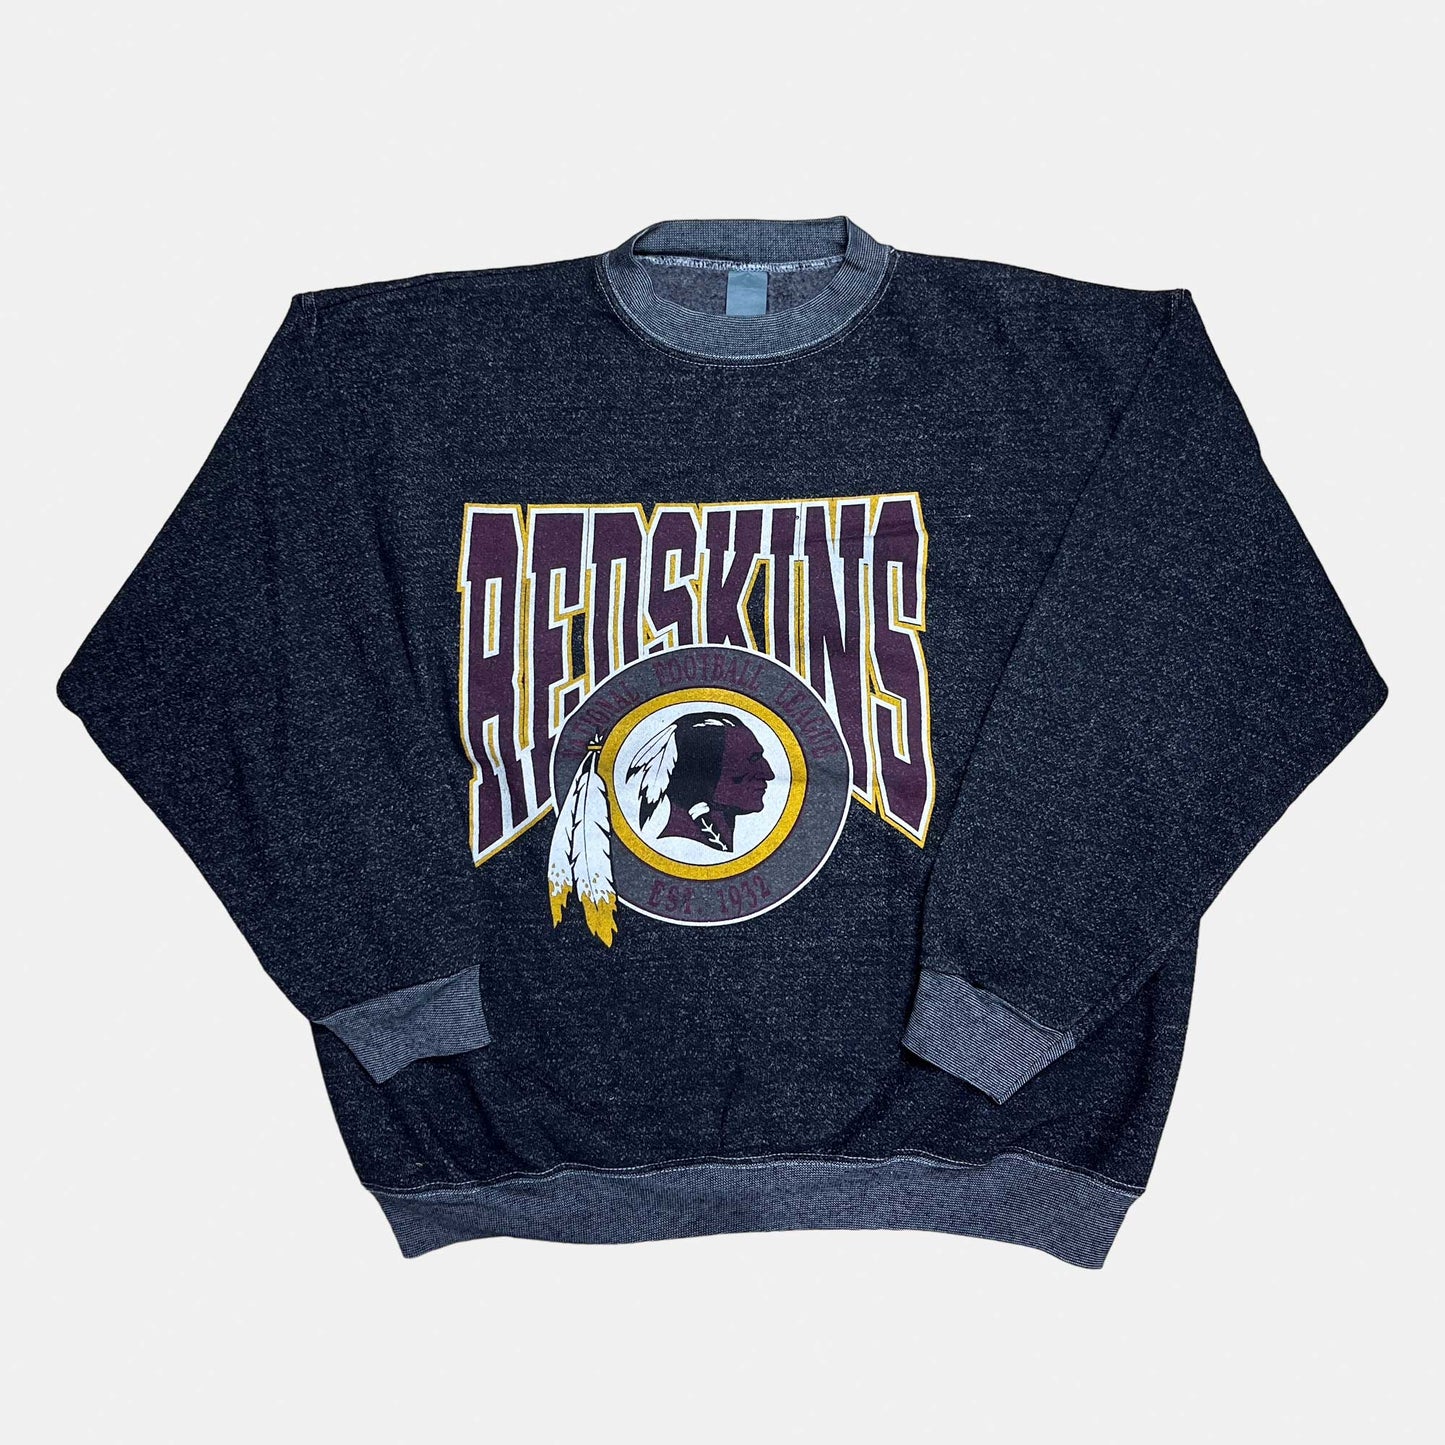 Washington Redskins - est. 1932 - Größe XL - NFL Sweatshirt